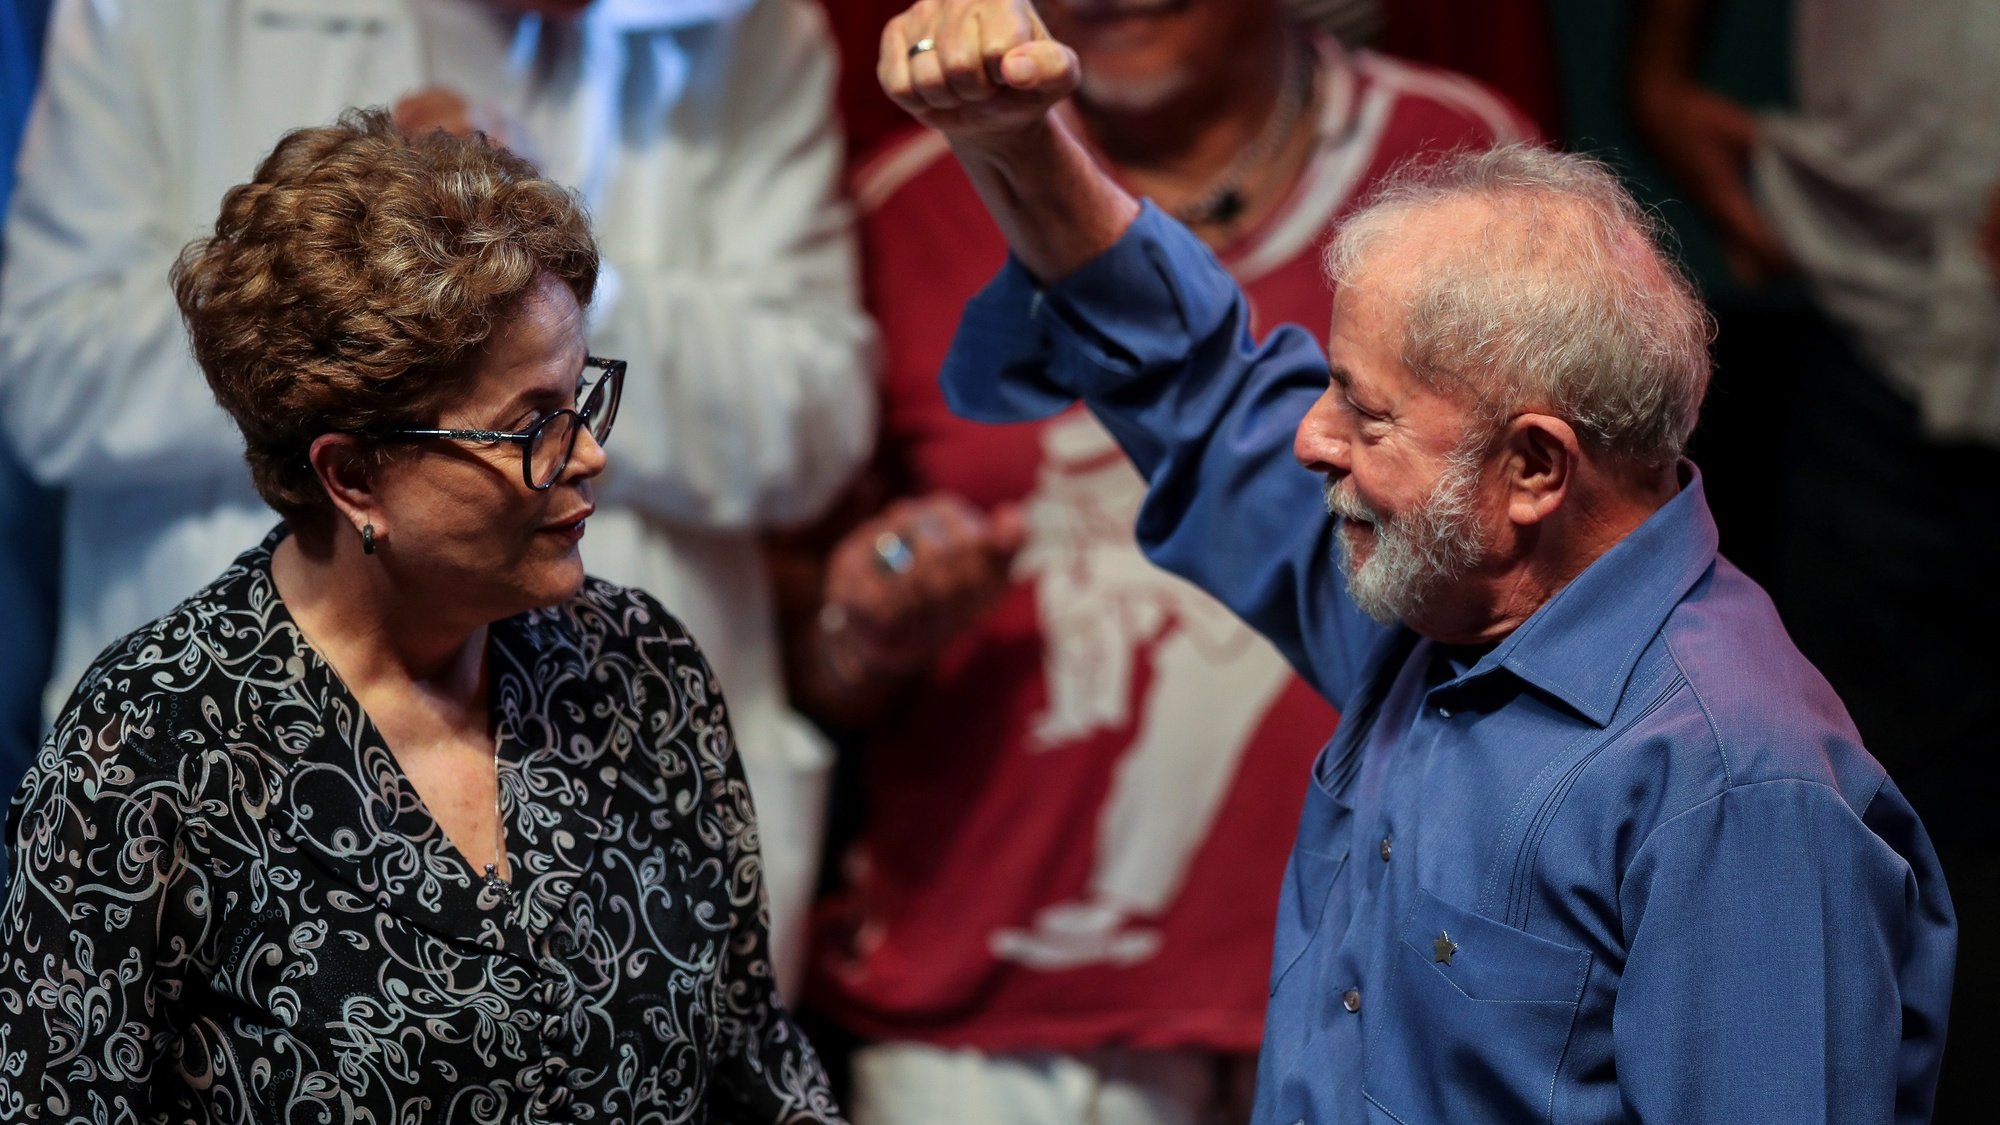 O antigo presidente brasileiro Lula da Silva com Dilma Roussef